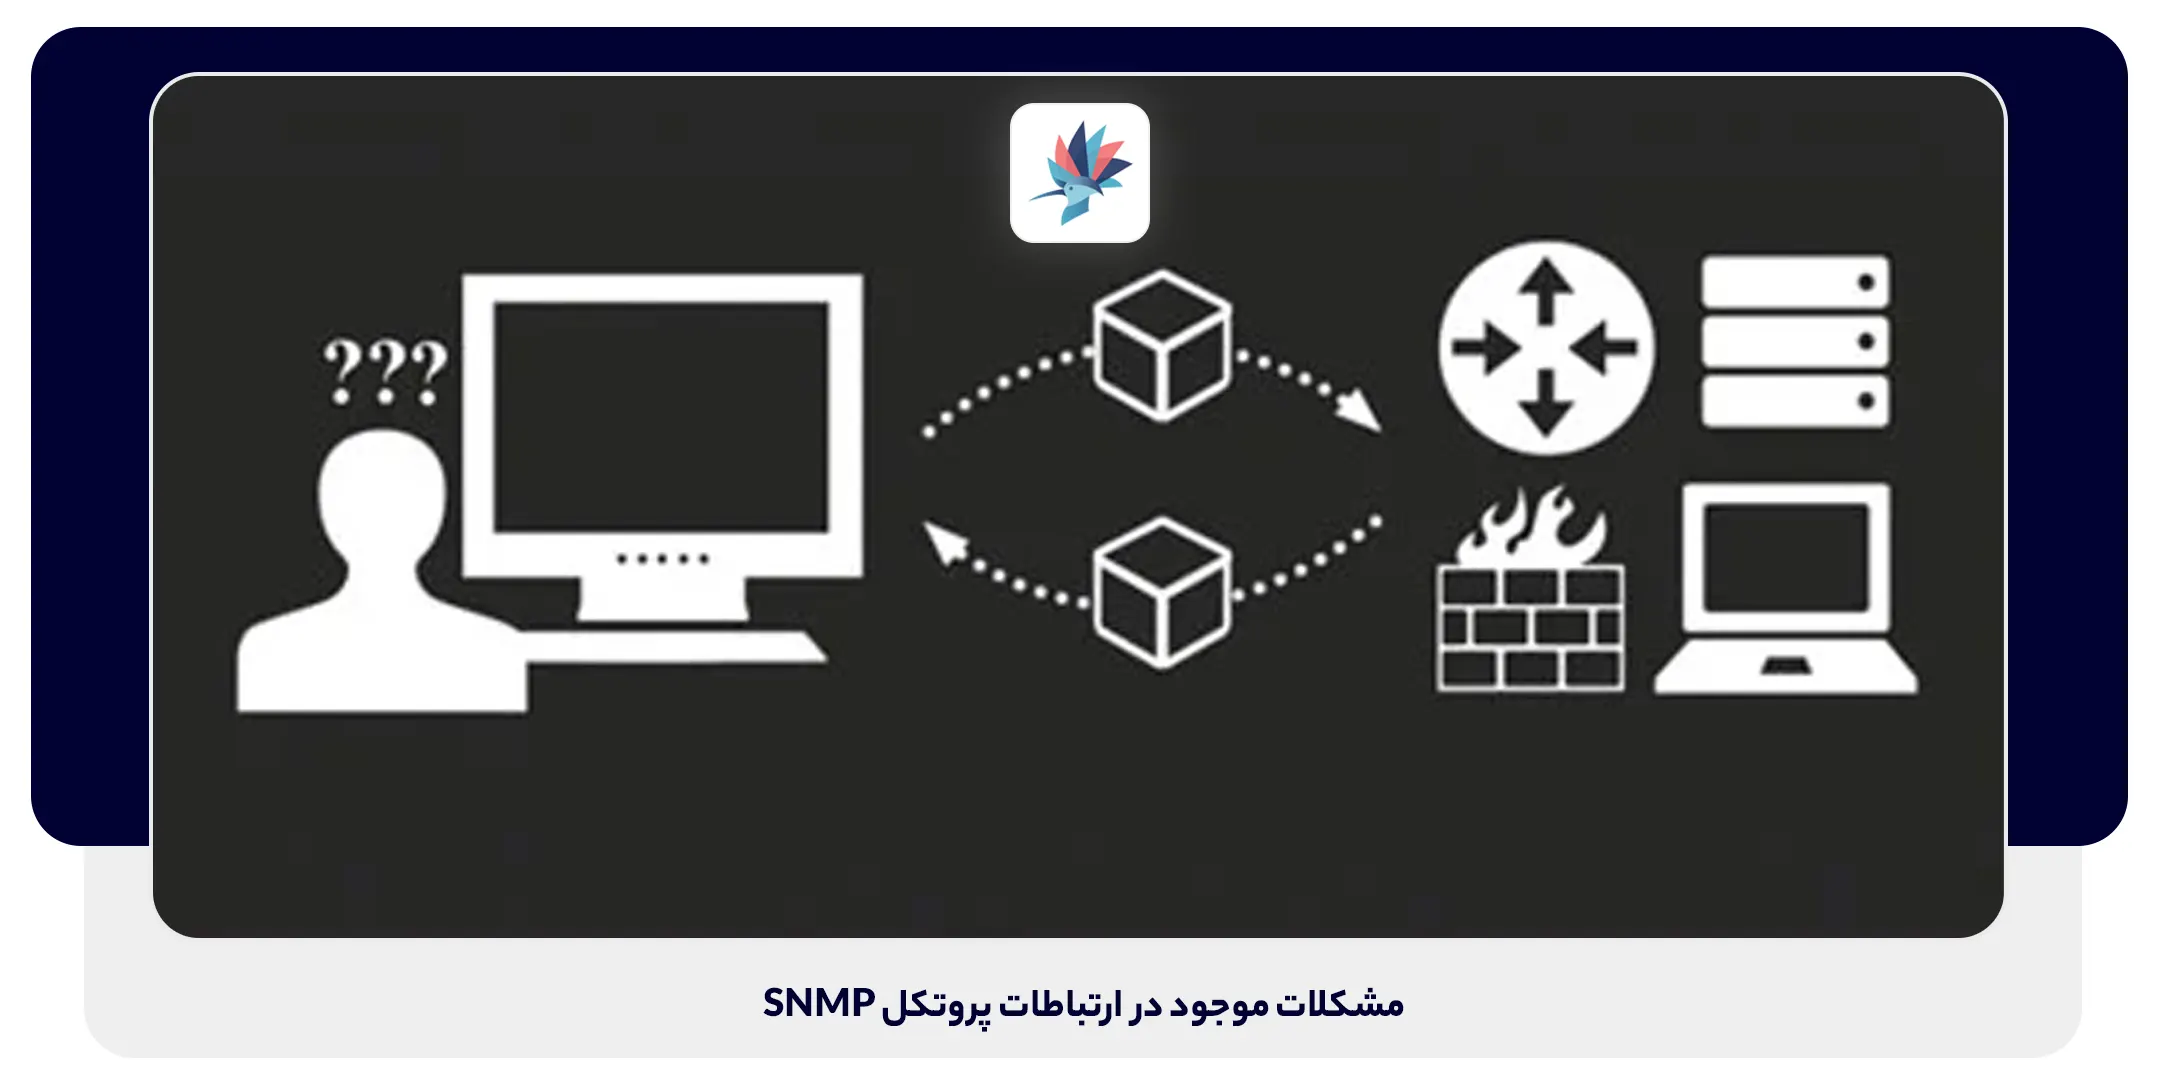 مشکلات ارتباطات پروتکل SNMP | داناپرداز